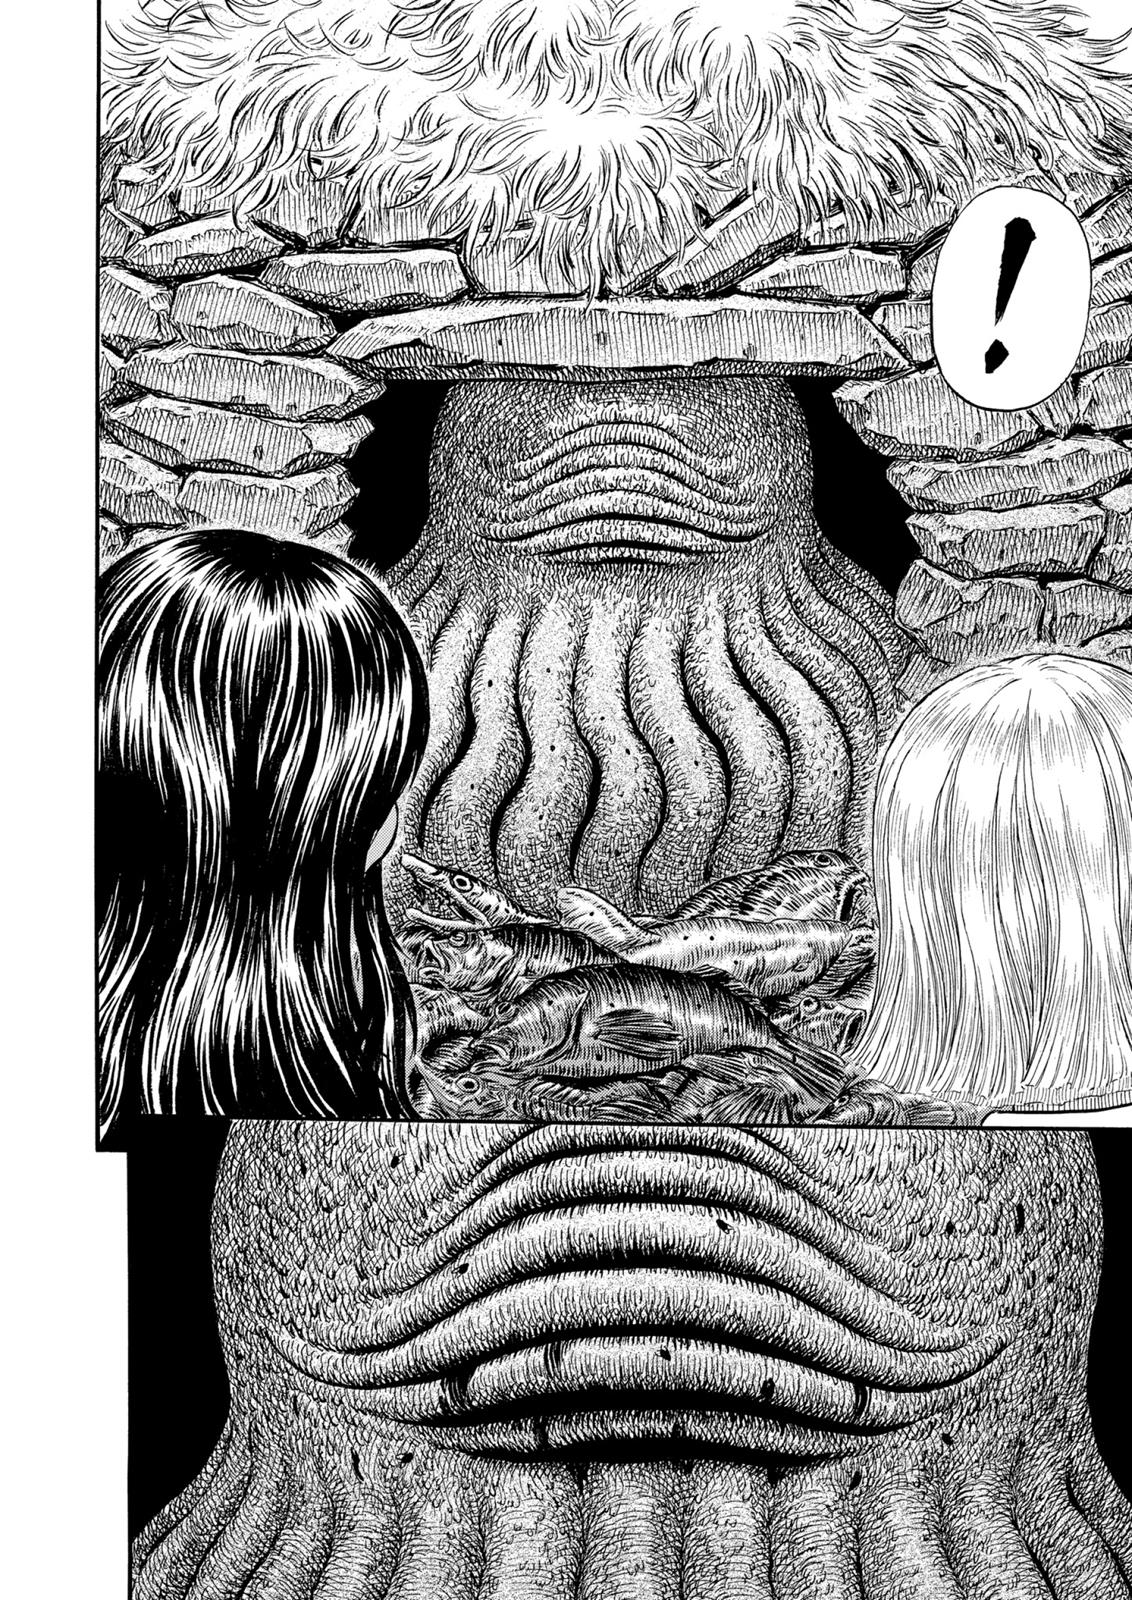 Berserk Manga Chapter 311 image 21